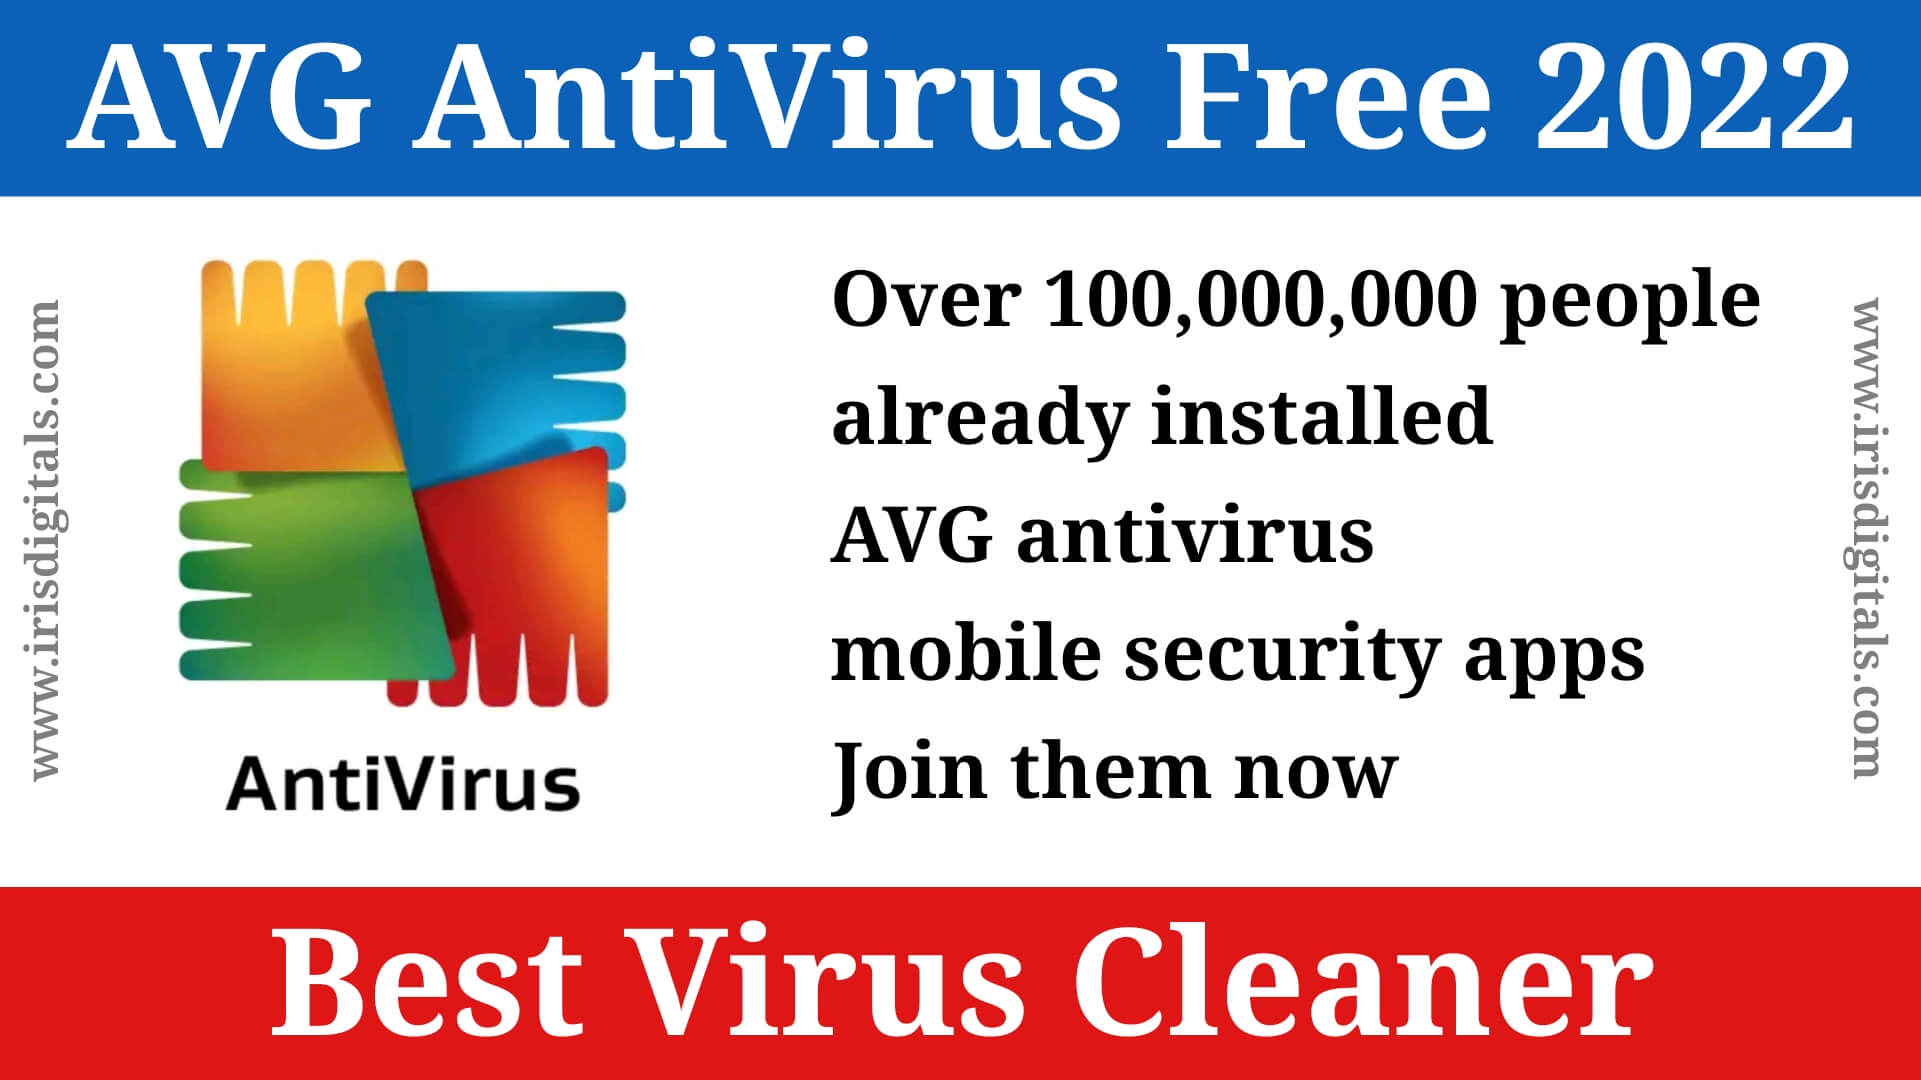 AVG AntiVirus Free 2022 | Best Virus Cleaner